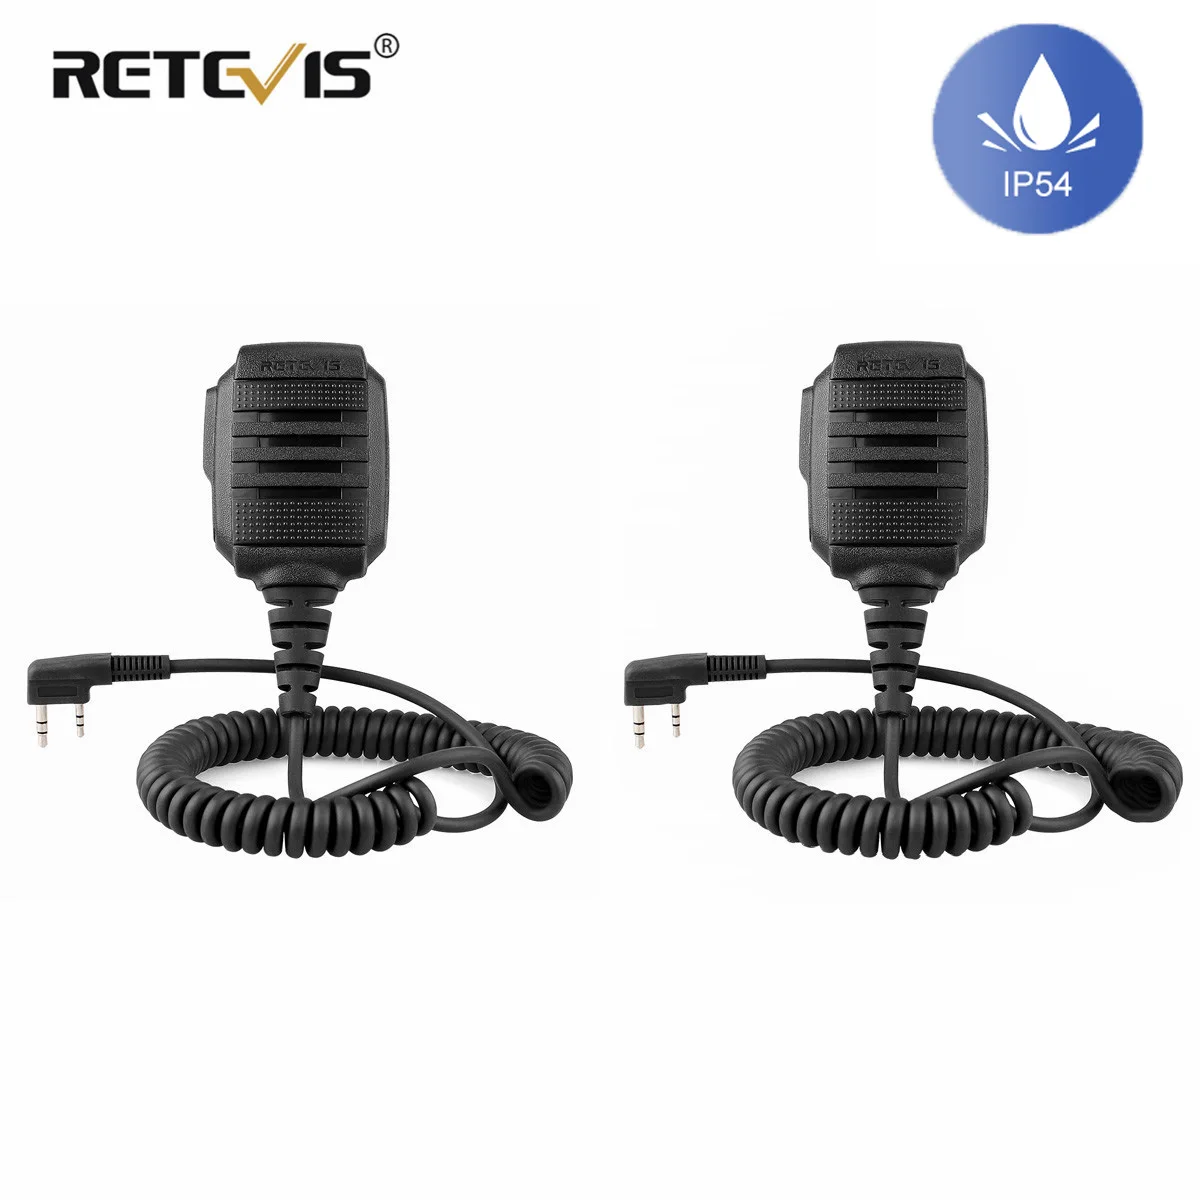 

2pcs RS-114 Walkie Talkie IP54 Waterproof Speaker Microphone PTT For Kenwood Baofeng UV 5R UV 82 888S RETEVIS H777 RT3S RT5R